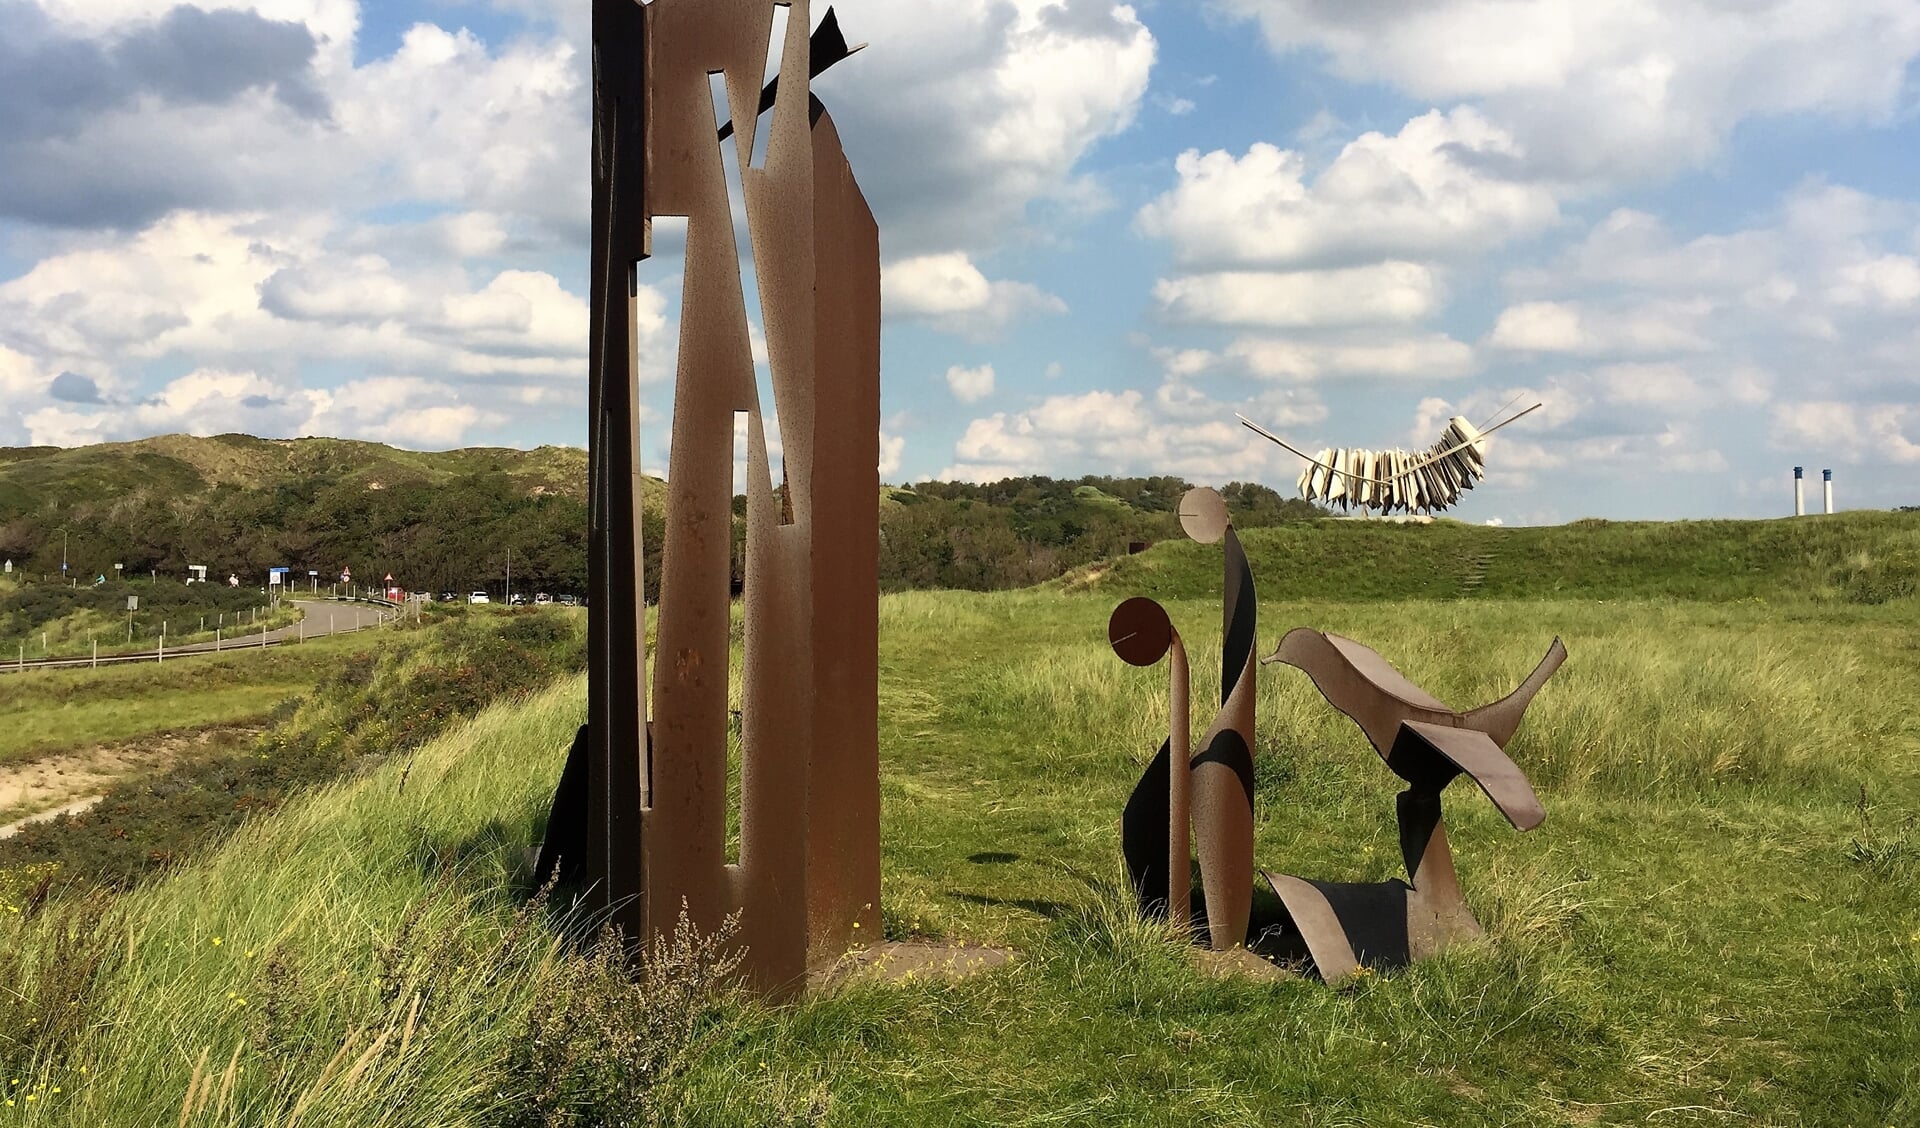 Het beeld van de Franse kunstenaar José Rault is gemaakt van afvalstukken staal van de achterliggende staalfabriek.